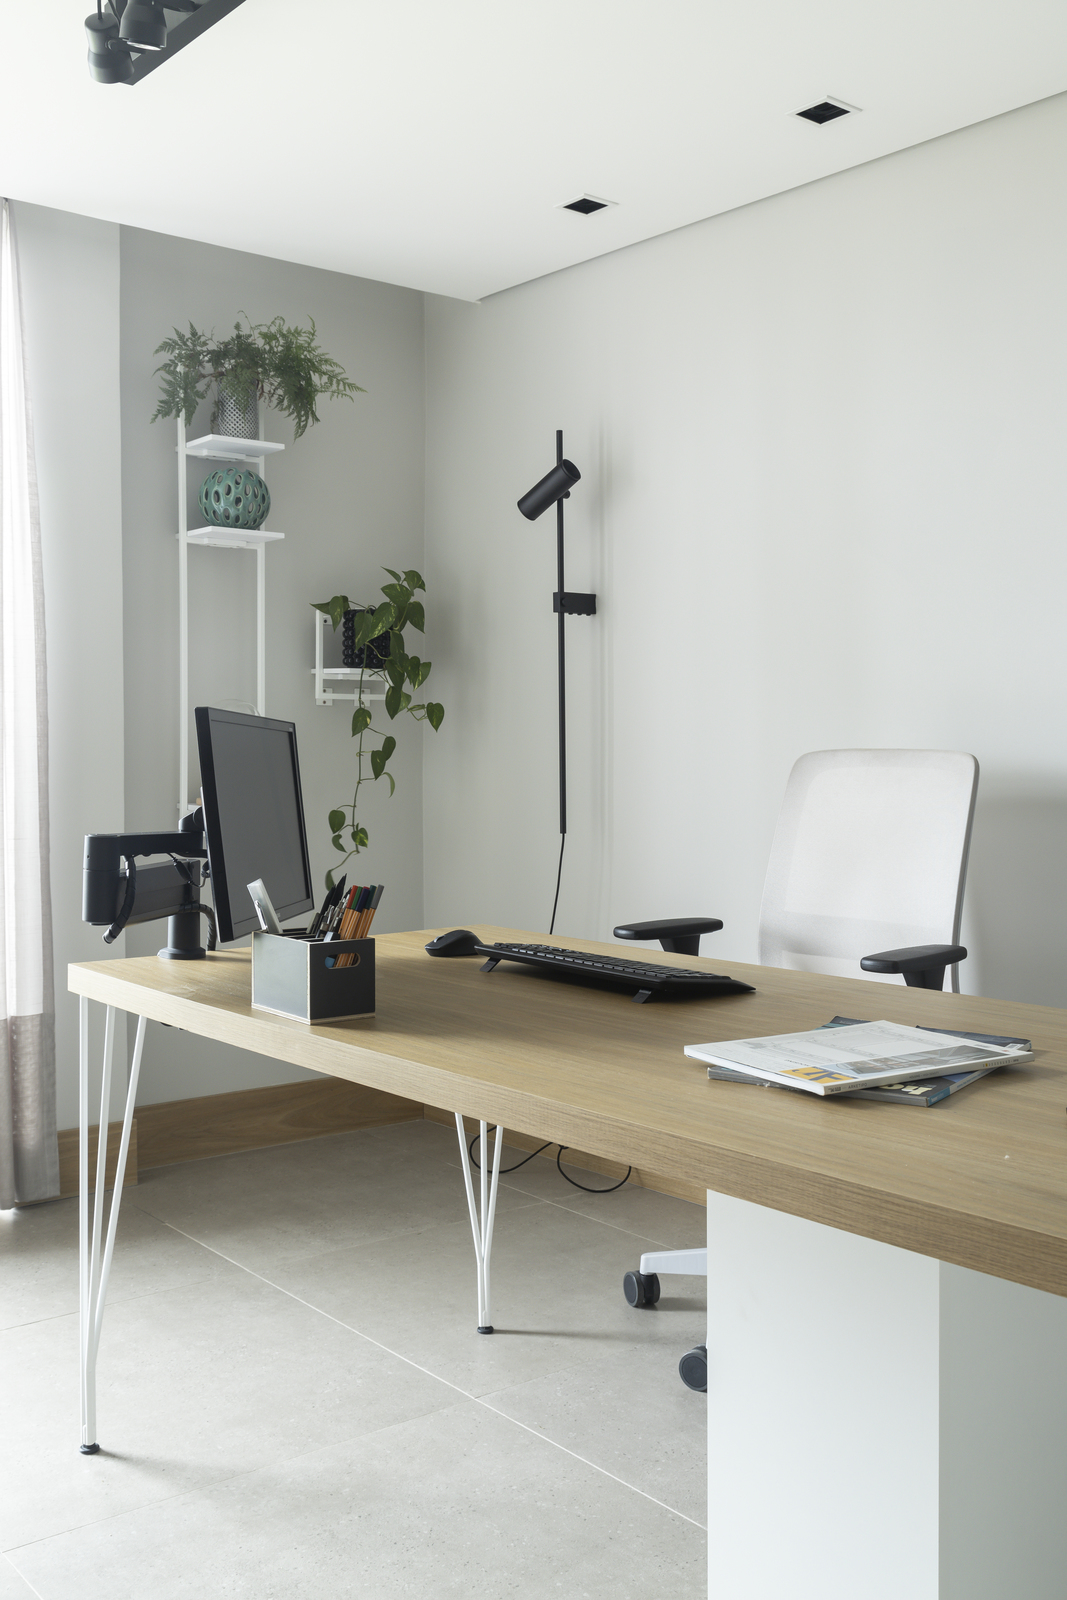 As cores claras e o design leve do mobiliário ajudaram a criar uma atmosfera agradável para o escritório do casal